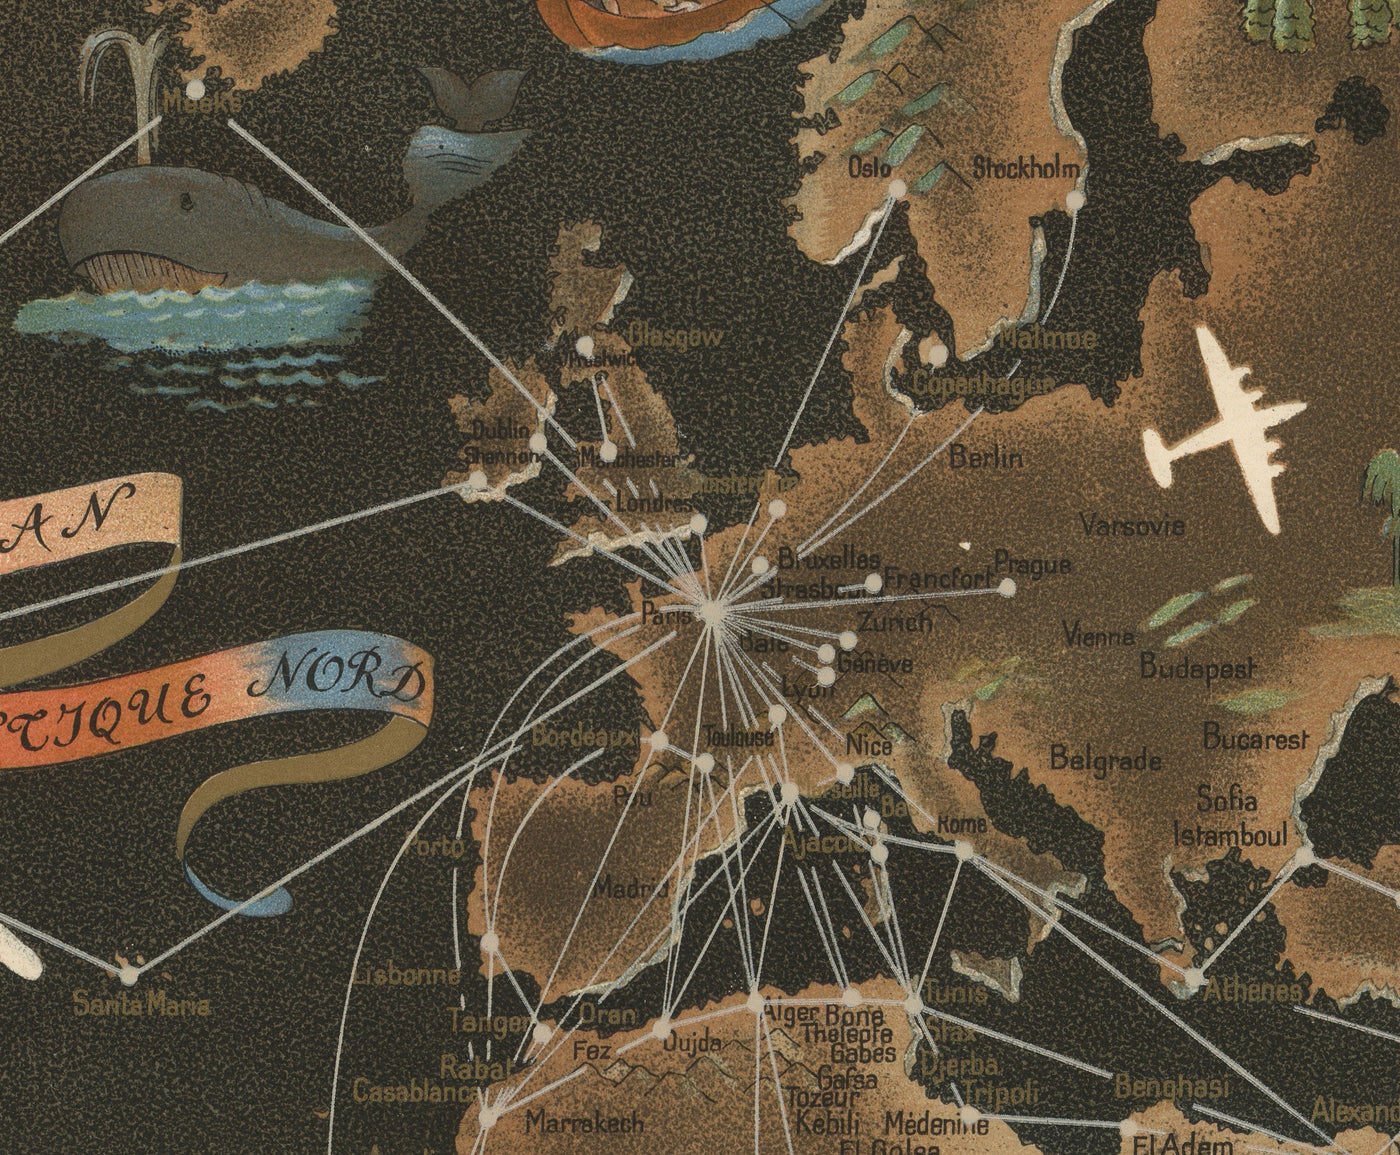 Alte Air France-Weltkarte, 1947 von Lucien Boucher - Große Flugzeugstrecke Wandkarte - Historische Airline-Kunst